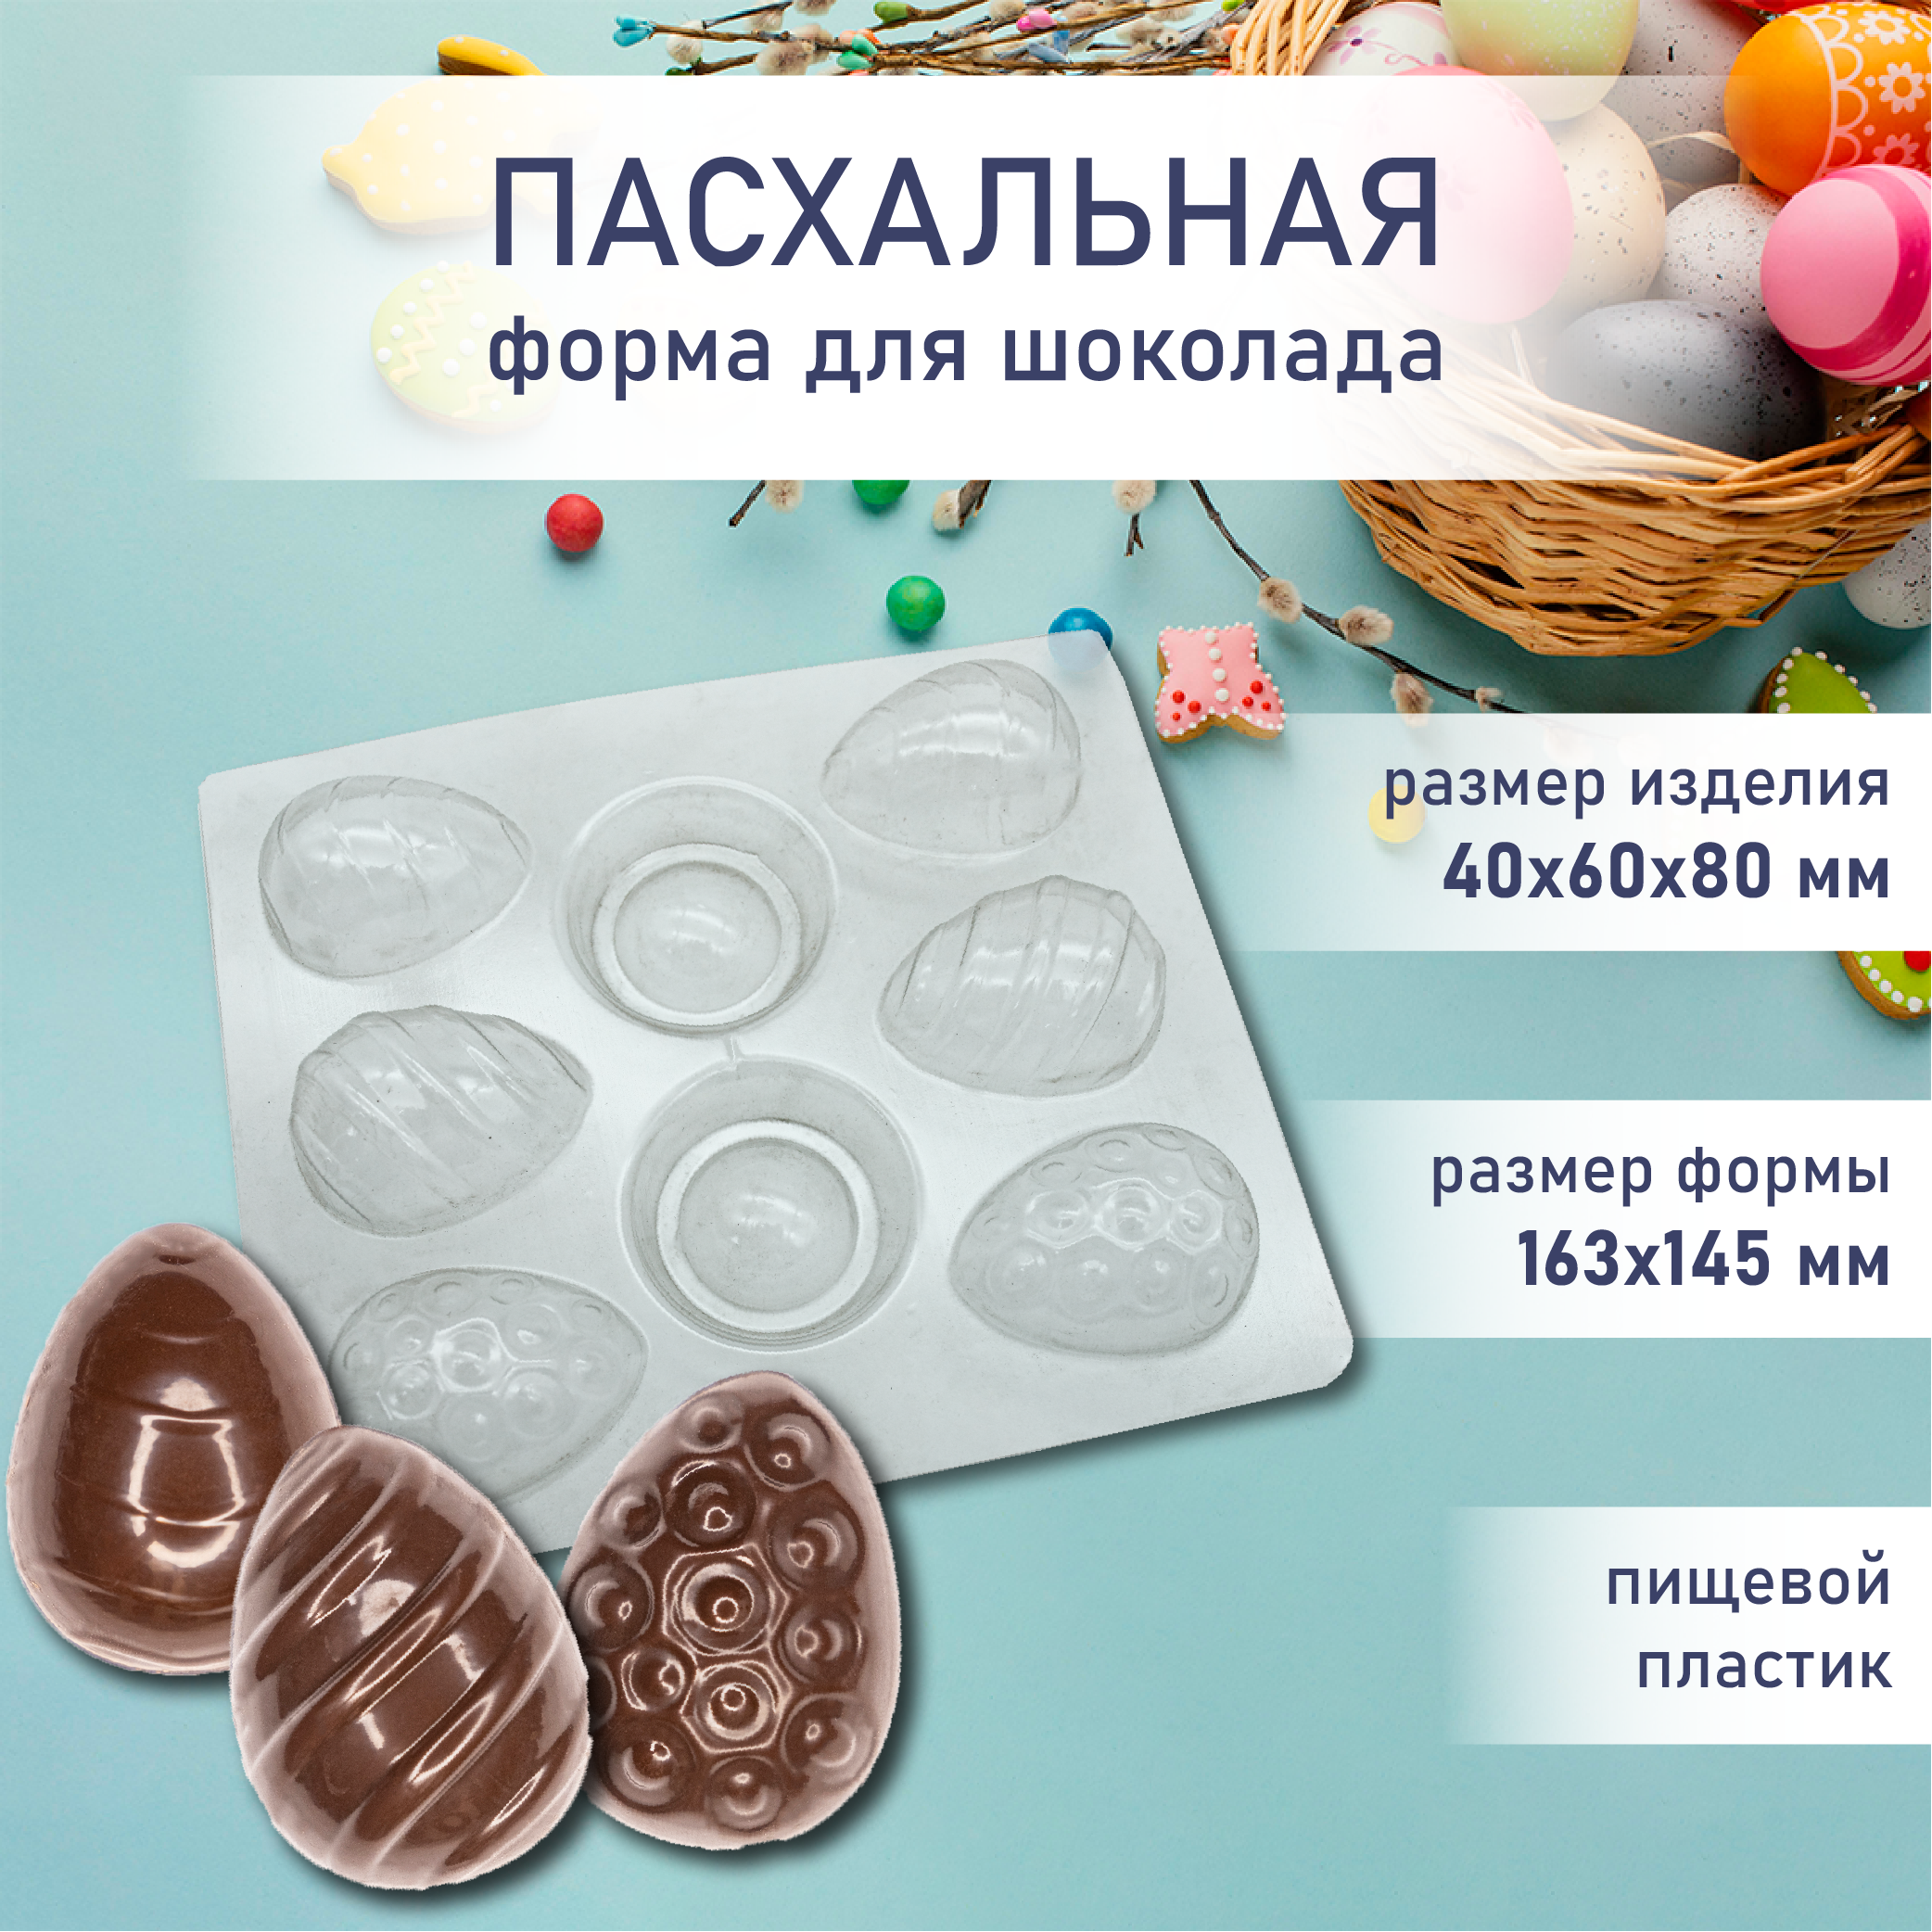 Форма для шоколада пасхальные яйца на подставке 6 шт VTK Products